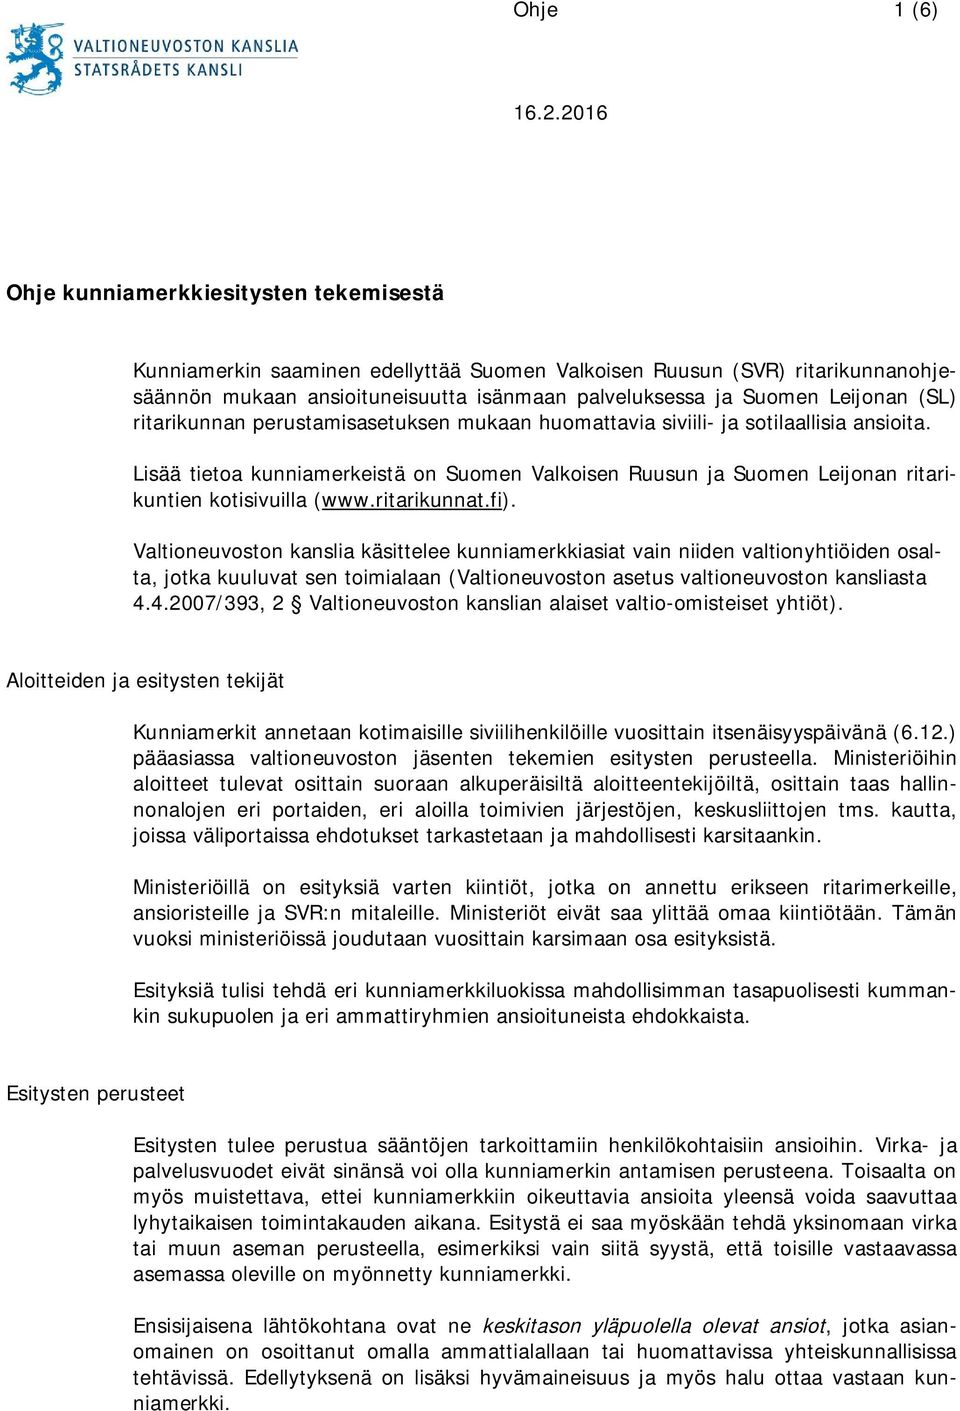 (SL) ritarikunnan perustamisasetuksen mukaan huomattavia siviili- ja sotilaallisia ansioita. Lisää tietoa kunniamerkeistä on Suomen Valkoisen Ruusun ja Suomen Leijonan ritarikuntien kotisivuilla (www.